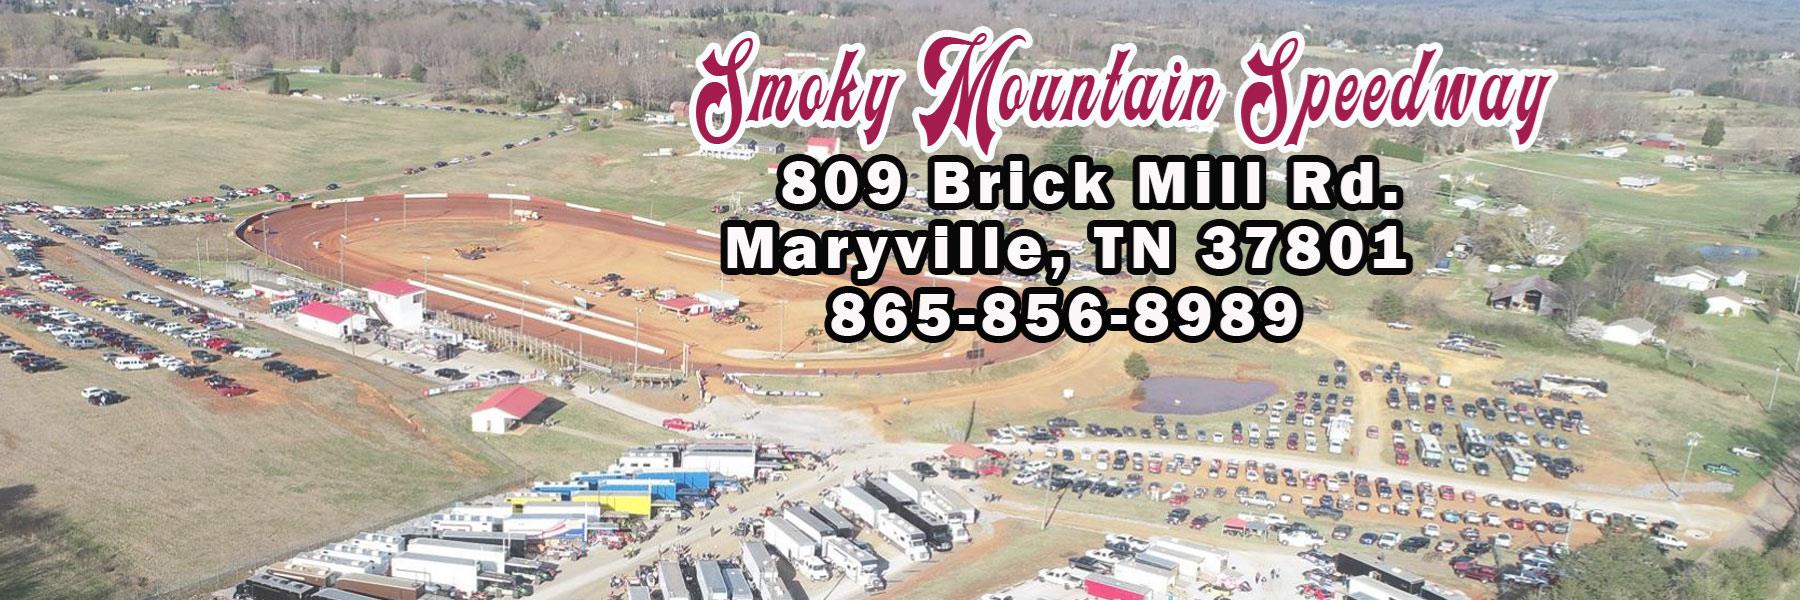 4/23/2022 - Smoky Mountain Speedway